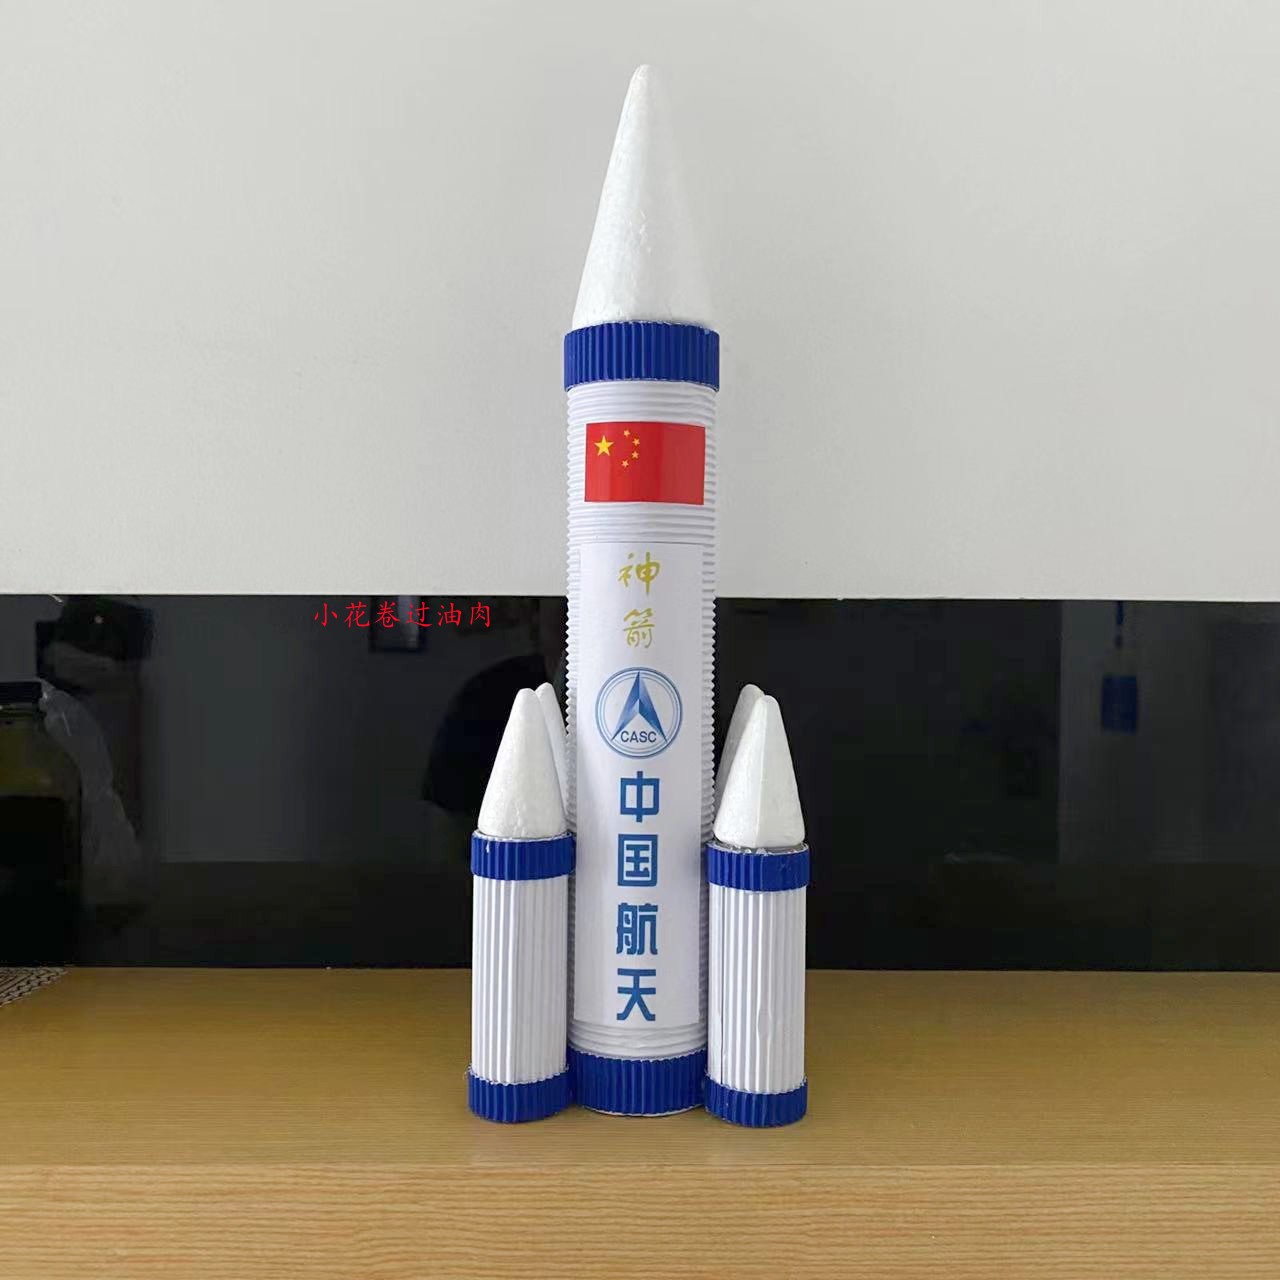 火箭手工制作材料幼儿园小学生航空航天手工制作变废为宝航天梦